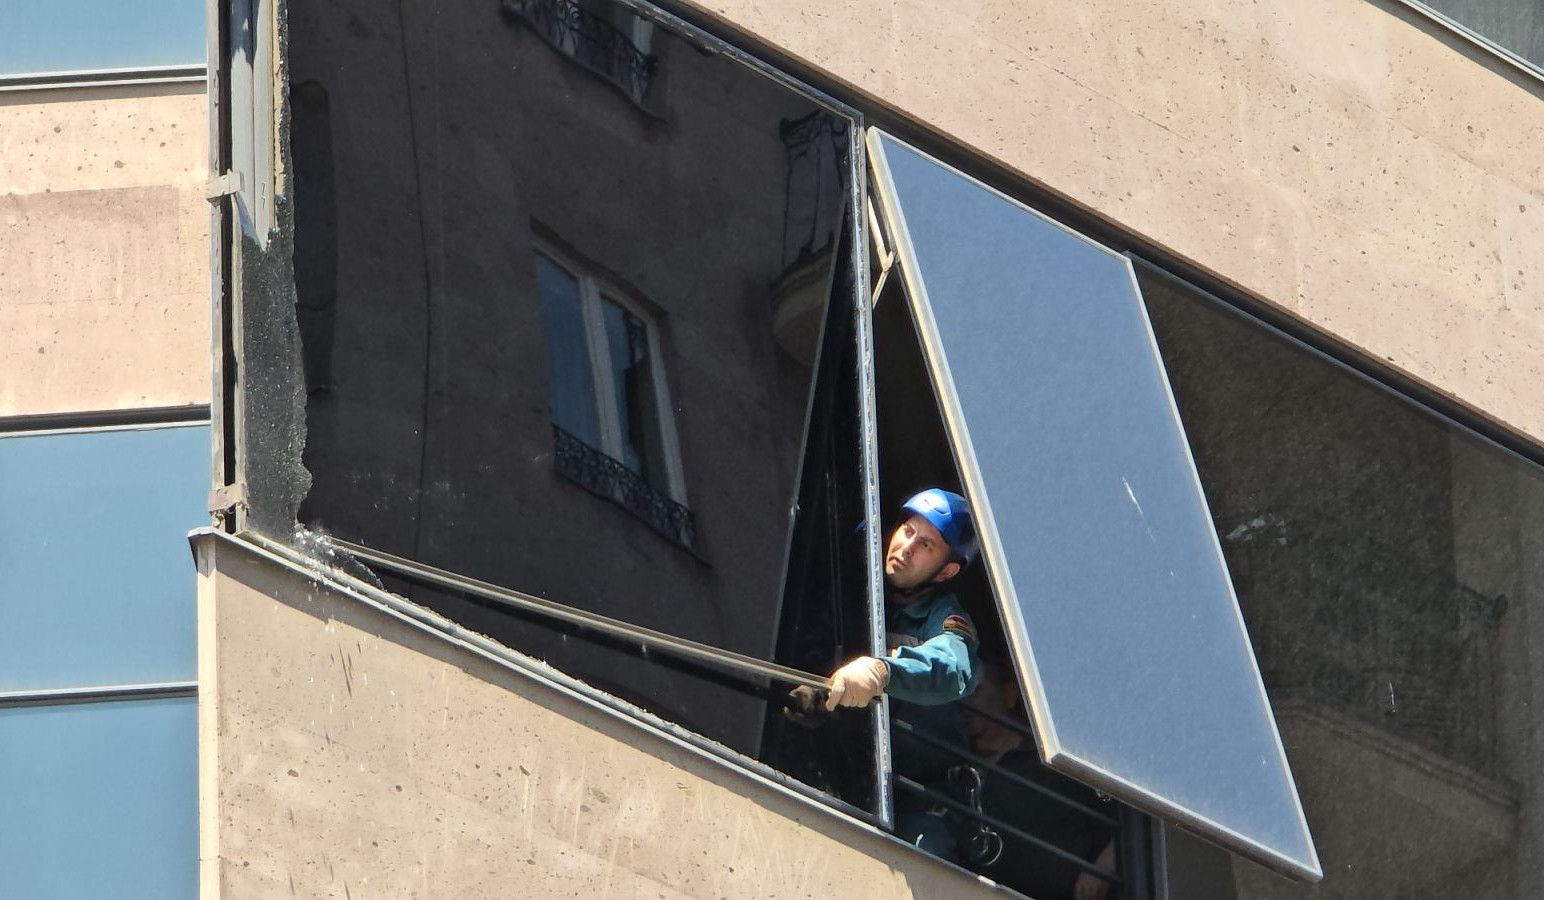 Հյուսիսային պողոտայի շենքերից մեկում փրկարարներն իրականացրել են պատուհանի ապակու վնասված հատվածի ապամոնտաժման աշխատանքներ